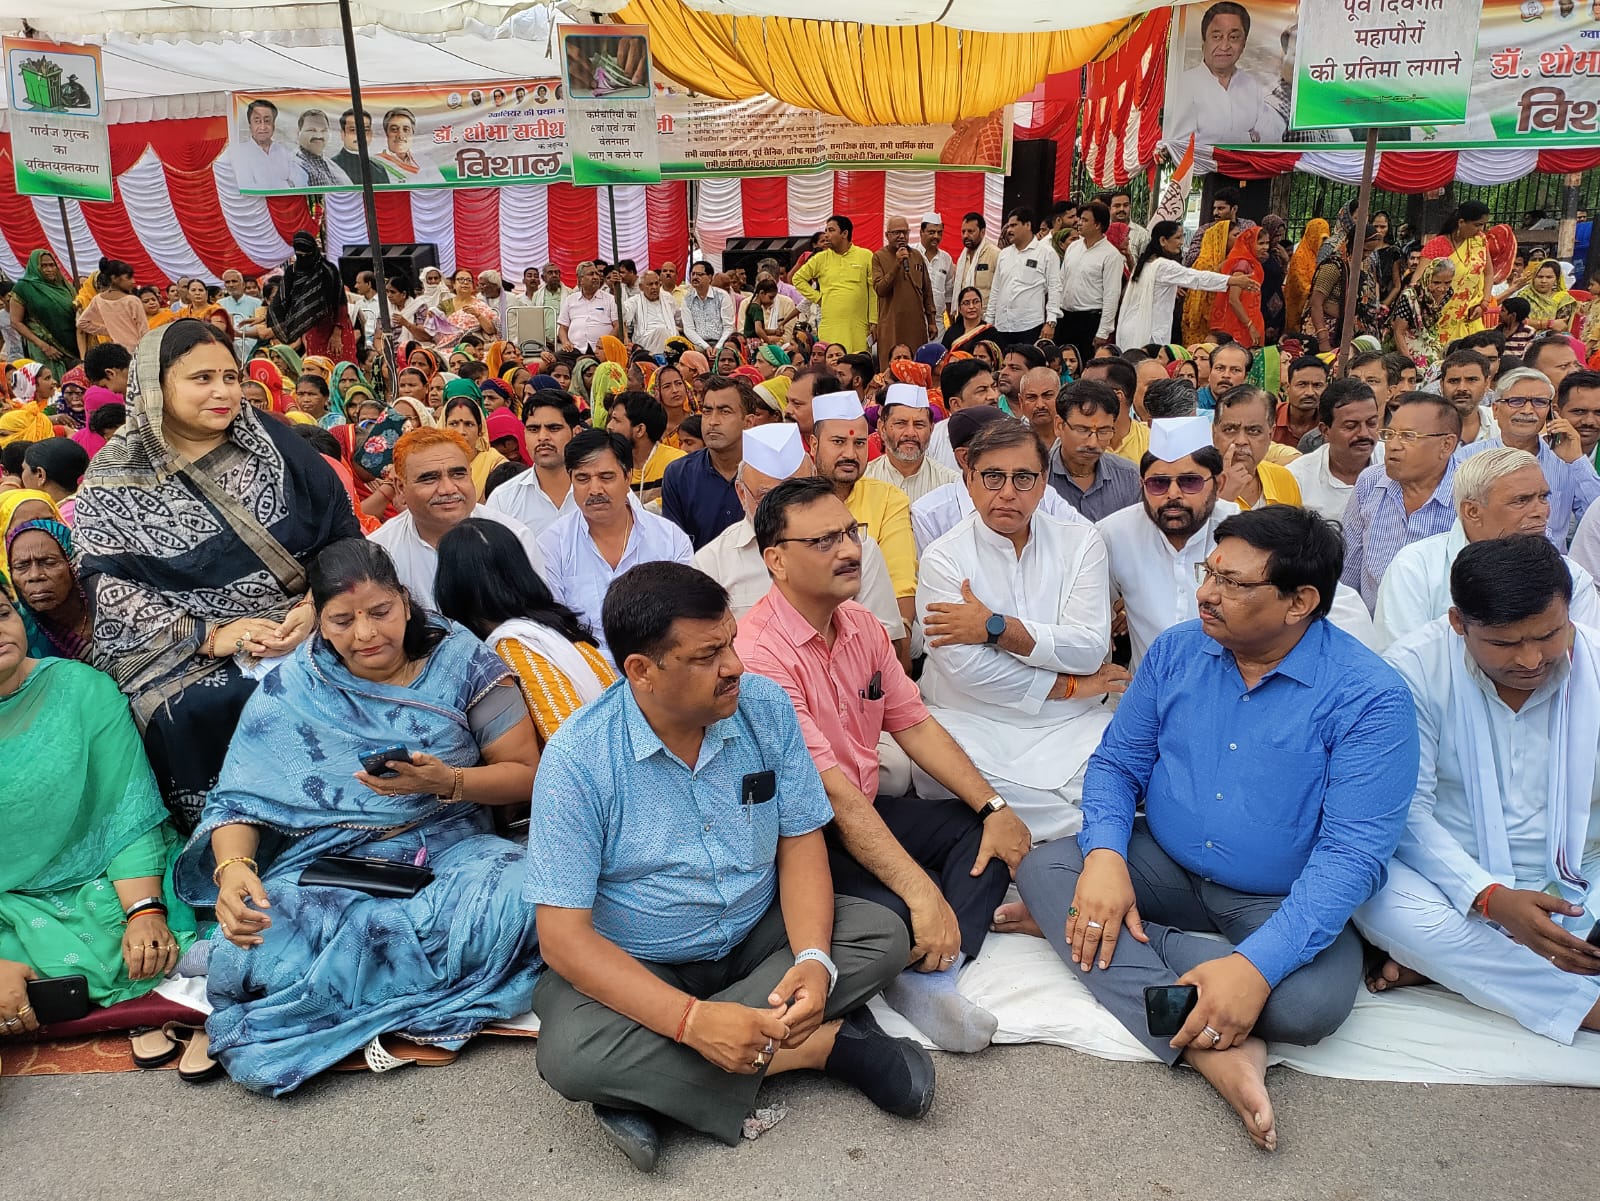 Gwalior News : महापौर के साथ कांग्रेस का विशाल धरना, भाजपा पर लगाये विकास रोकने और सौतेले व्यवहार के आरोप